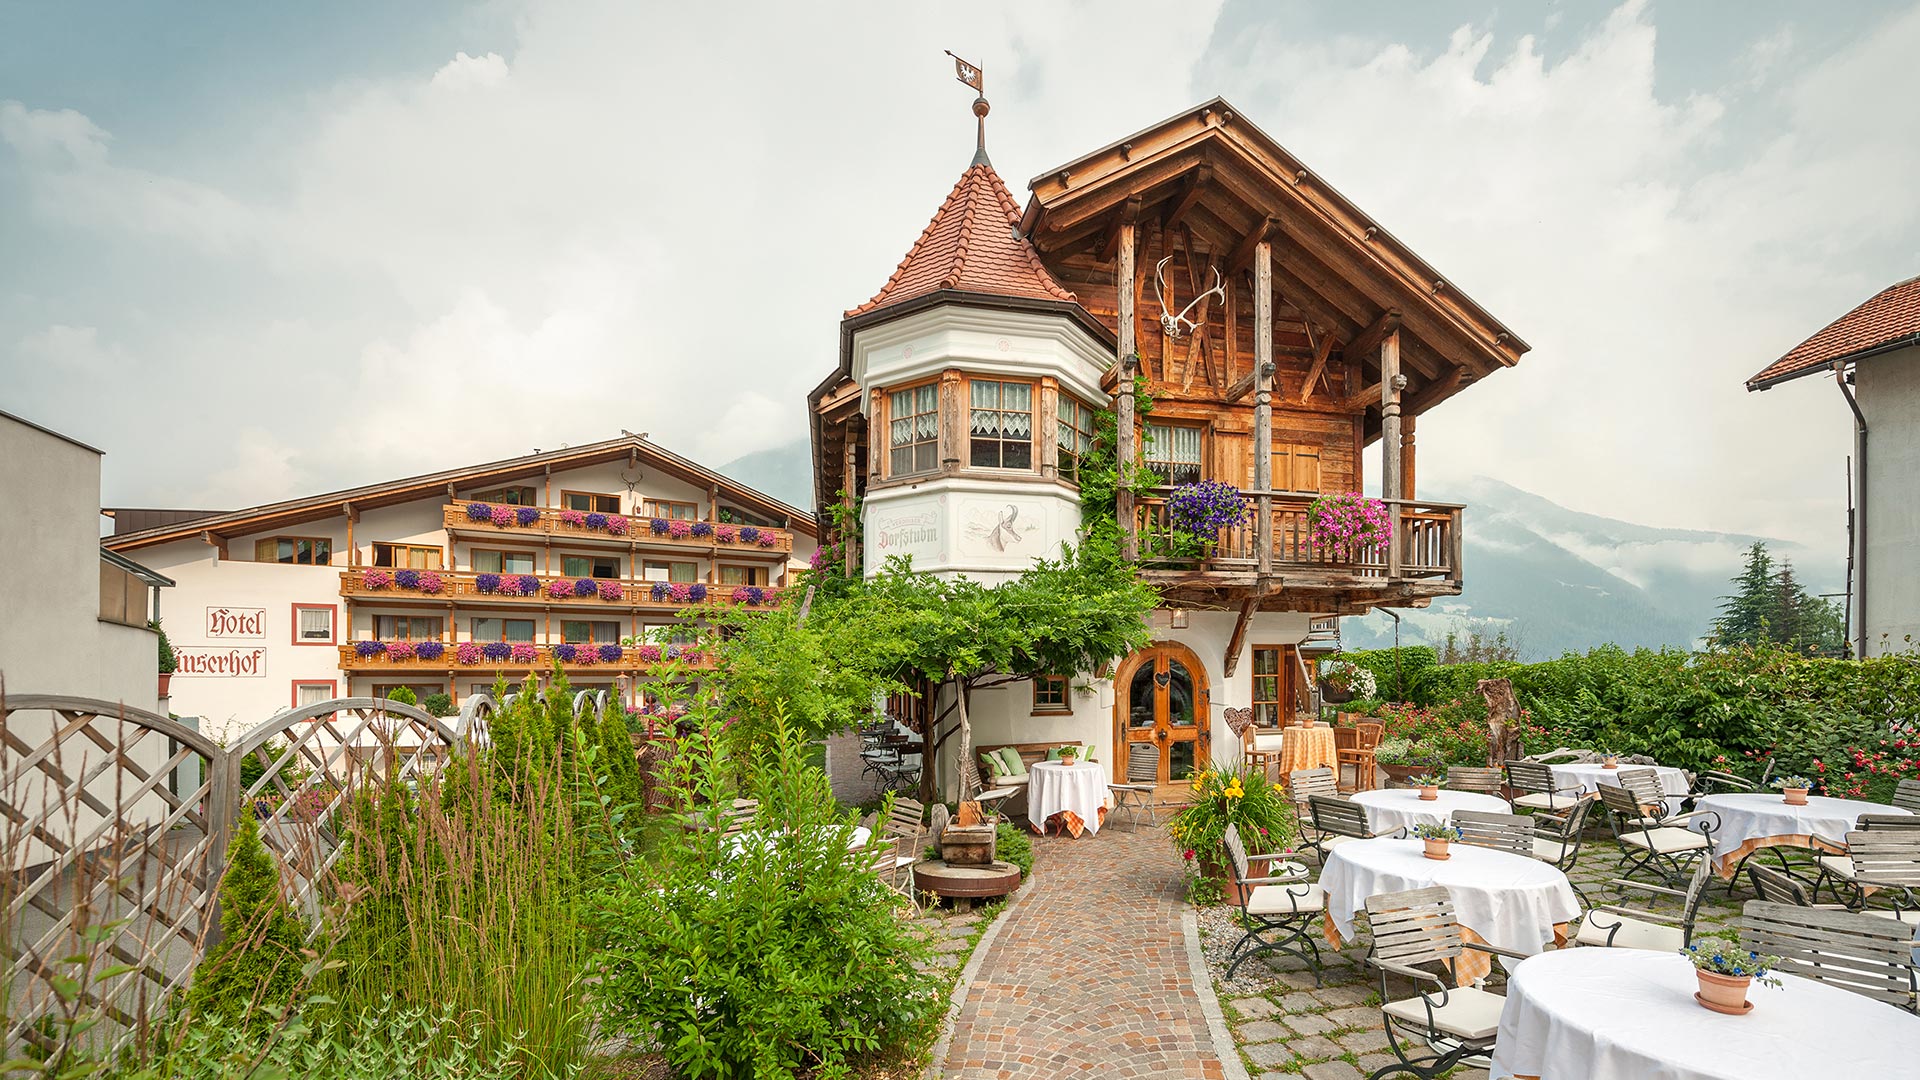 Der Verdinser Hof hat auch ein kanonisches Restaurant in Schenna: die Stube. Genießen Sie die traditionelle Südtiroler Küche und Gastfreundschaft.